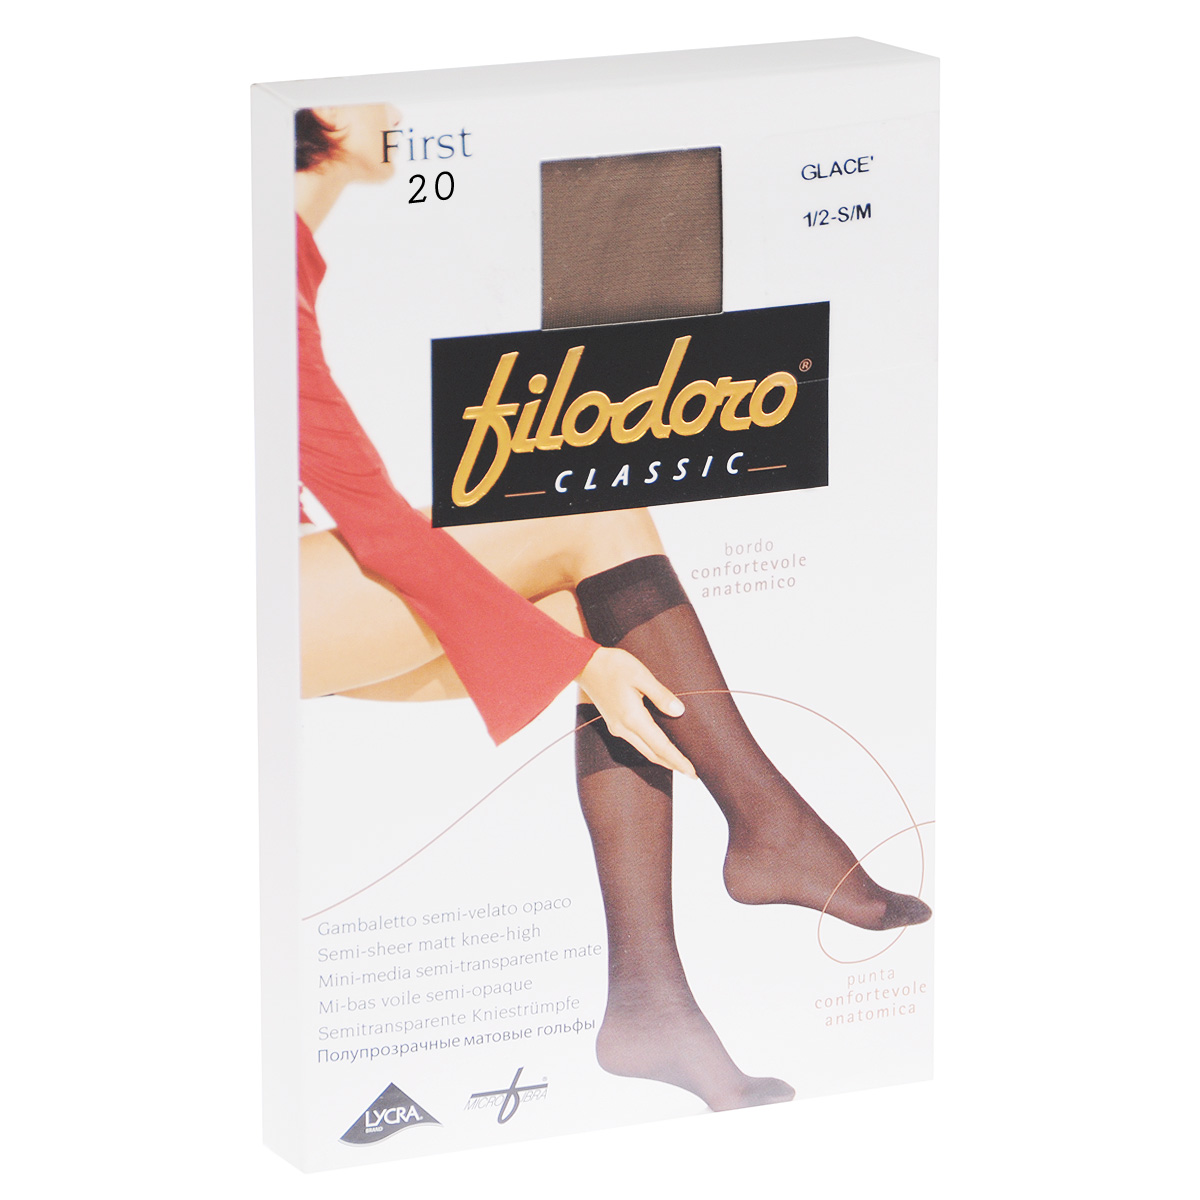 Гольфы женские Filodoro Classic First 20, цвет: Playa (телесный). C110303FC. Размер 1/2 (S/M)